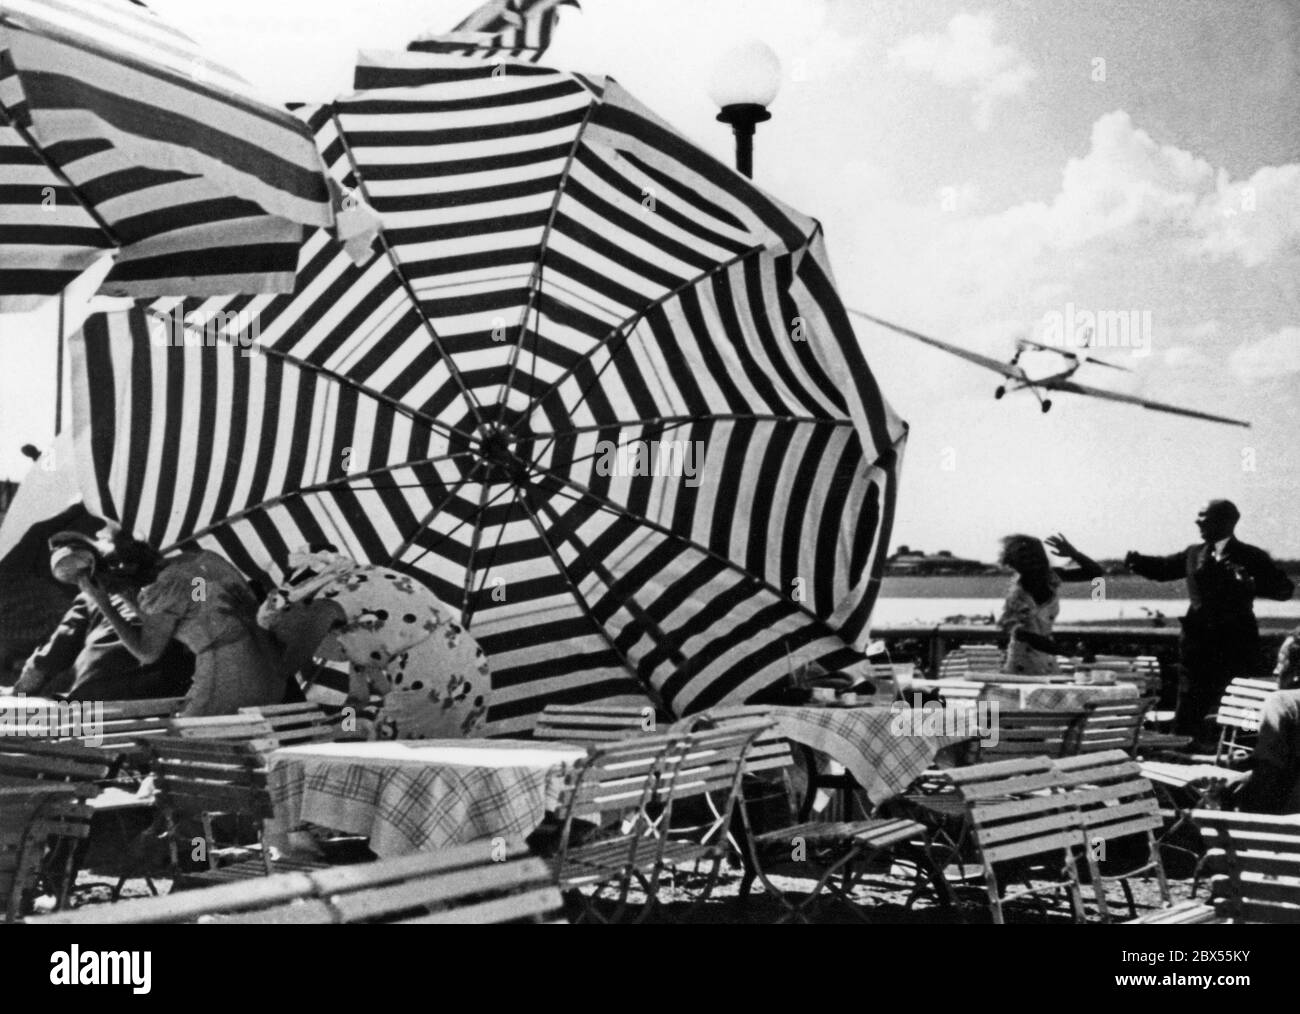 L'ex pilota di caccia Ernst Udet, dopo Manfred von Richthofen, l'asso più riuscito della prima guerra mondiale, vola con le acrobazie sopra l'aeroporto Tempelhof di Berlino. L'immagine mostra le scene di una ripresa del film "Miracolo del volo" in cui Udet capovolge gli ombrelloni con le ali. Foto Stock